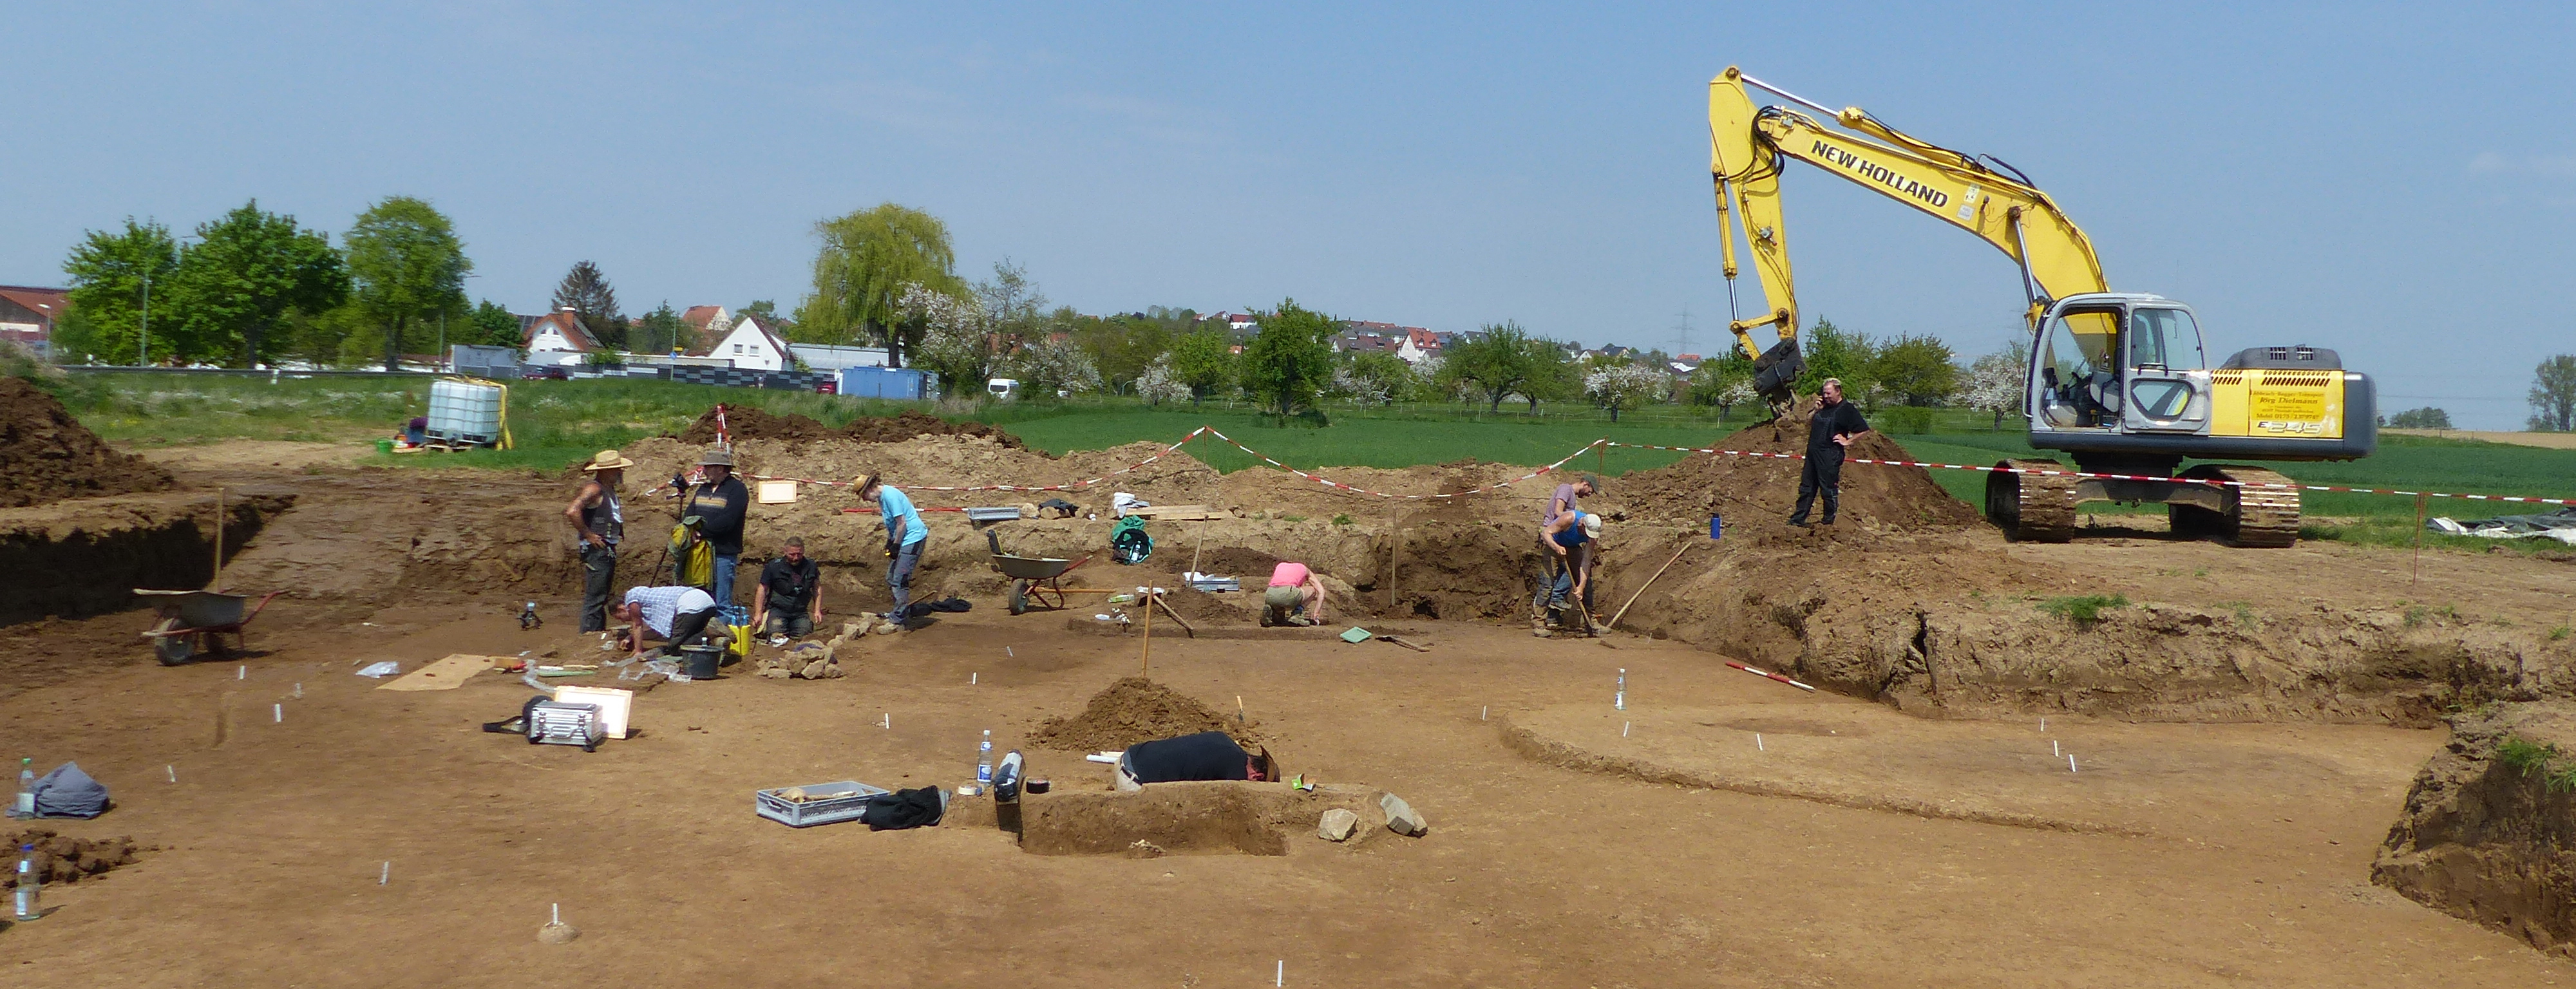 Ein Blick auf die großen Ausgrabungen in Rockenberg, Archäologen und ein Bager legen die Funde frei. Die Befunde und Funde überstiegen dabei alle Erwartungen.